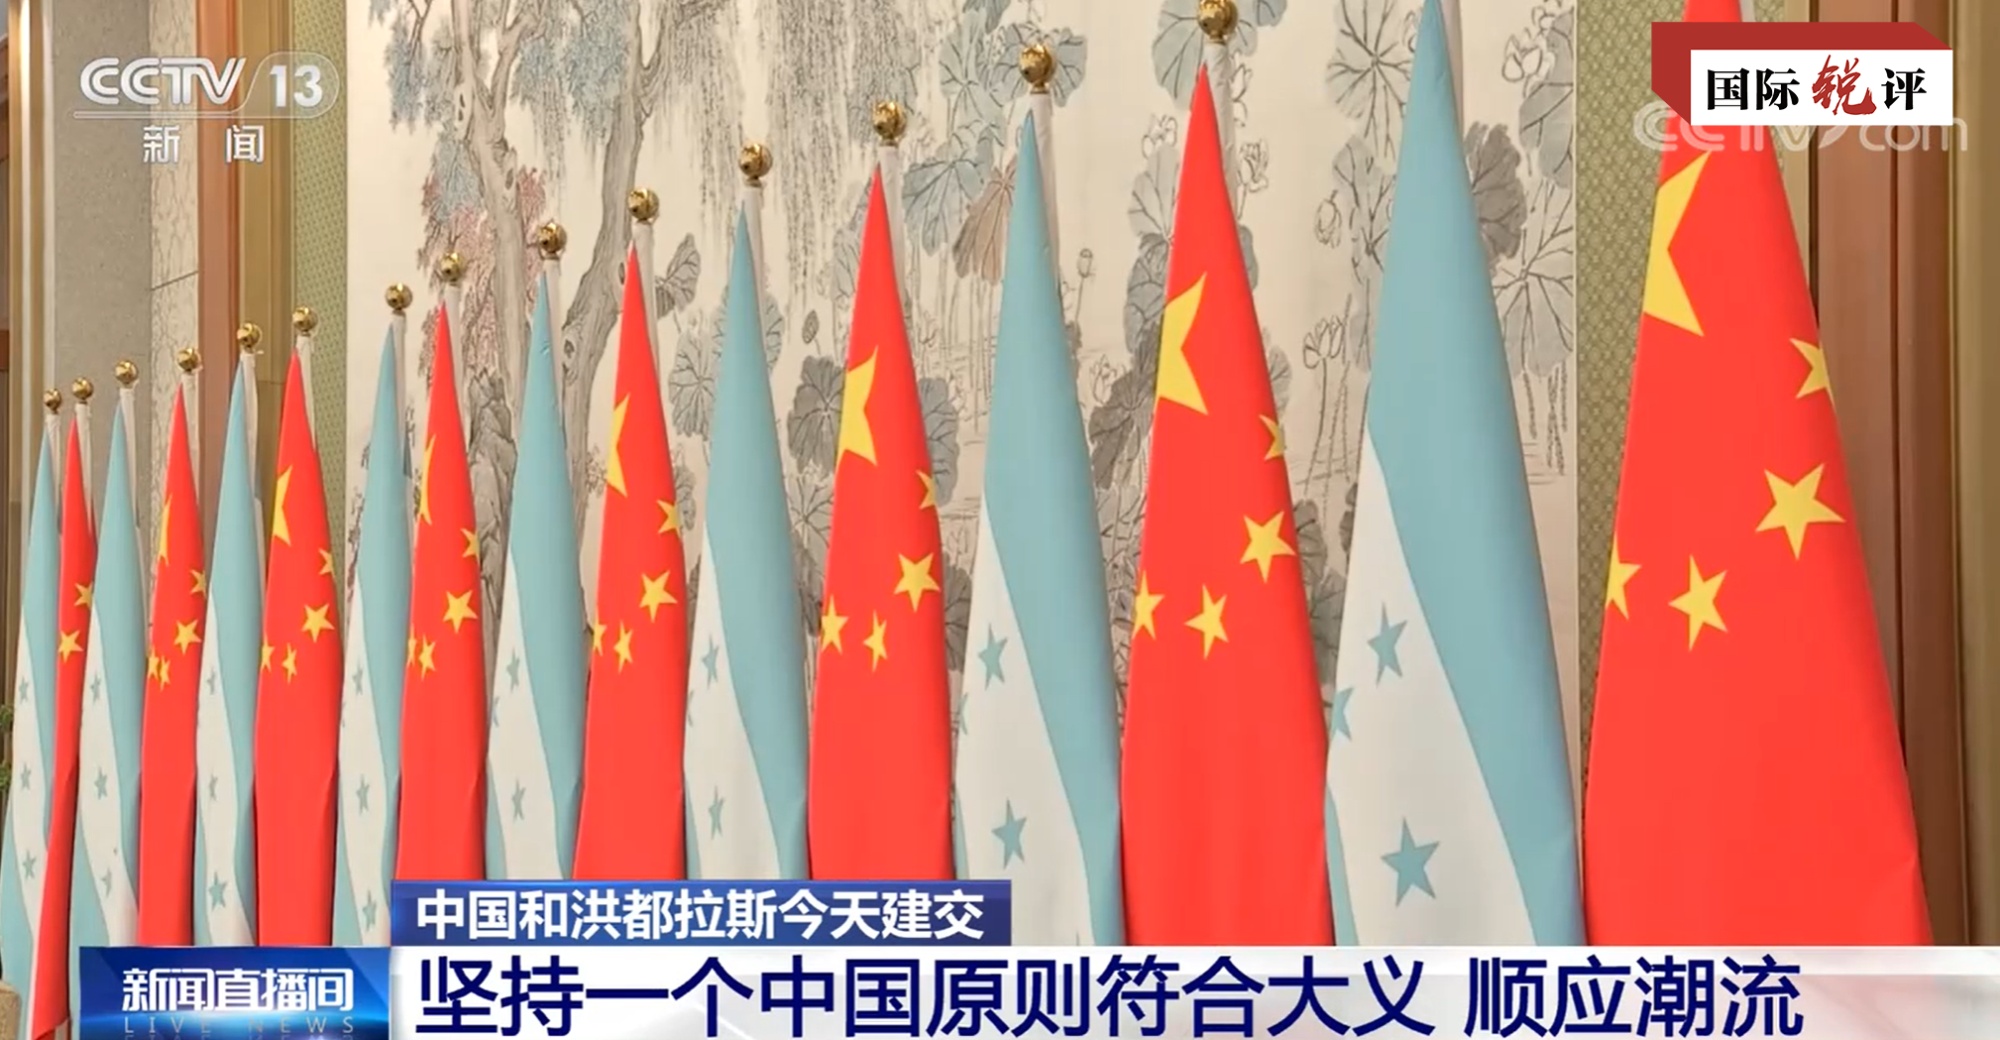 برقراری روابط دیپلماتیک بین چین و هندرواس، نمایانگر پایبندی به اصل چین واحد به عنوان مصداق عدالت بین المللیا